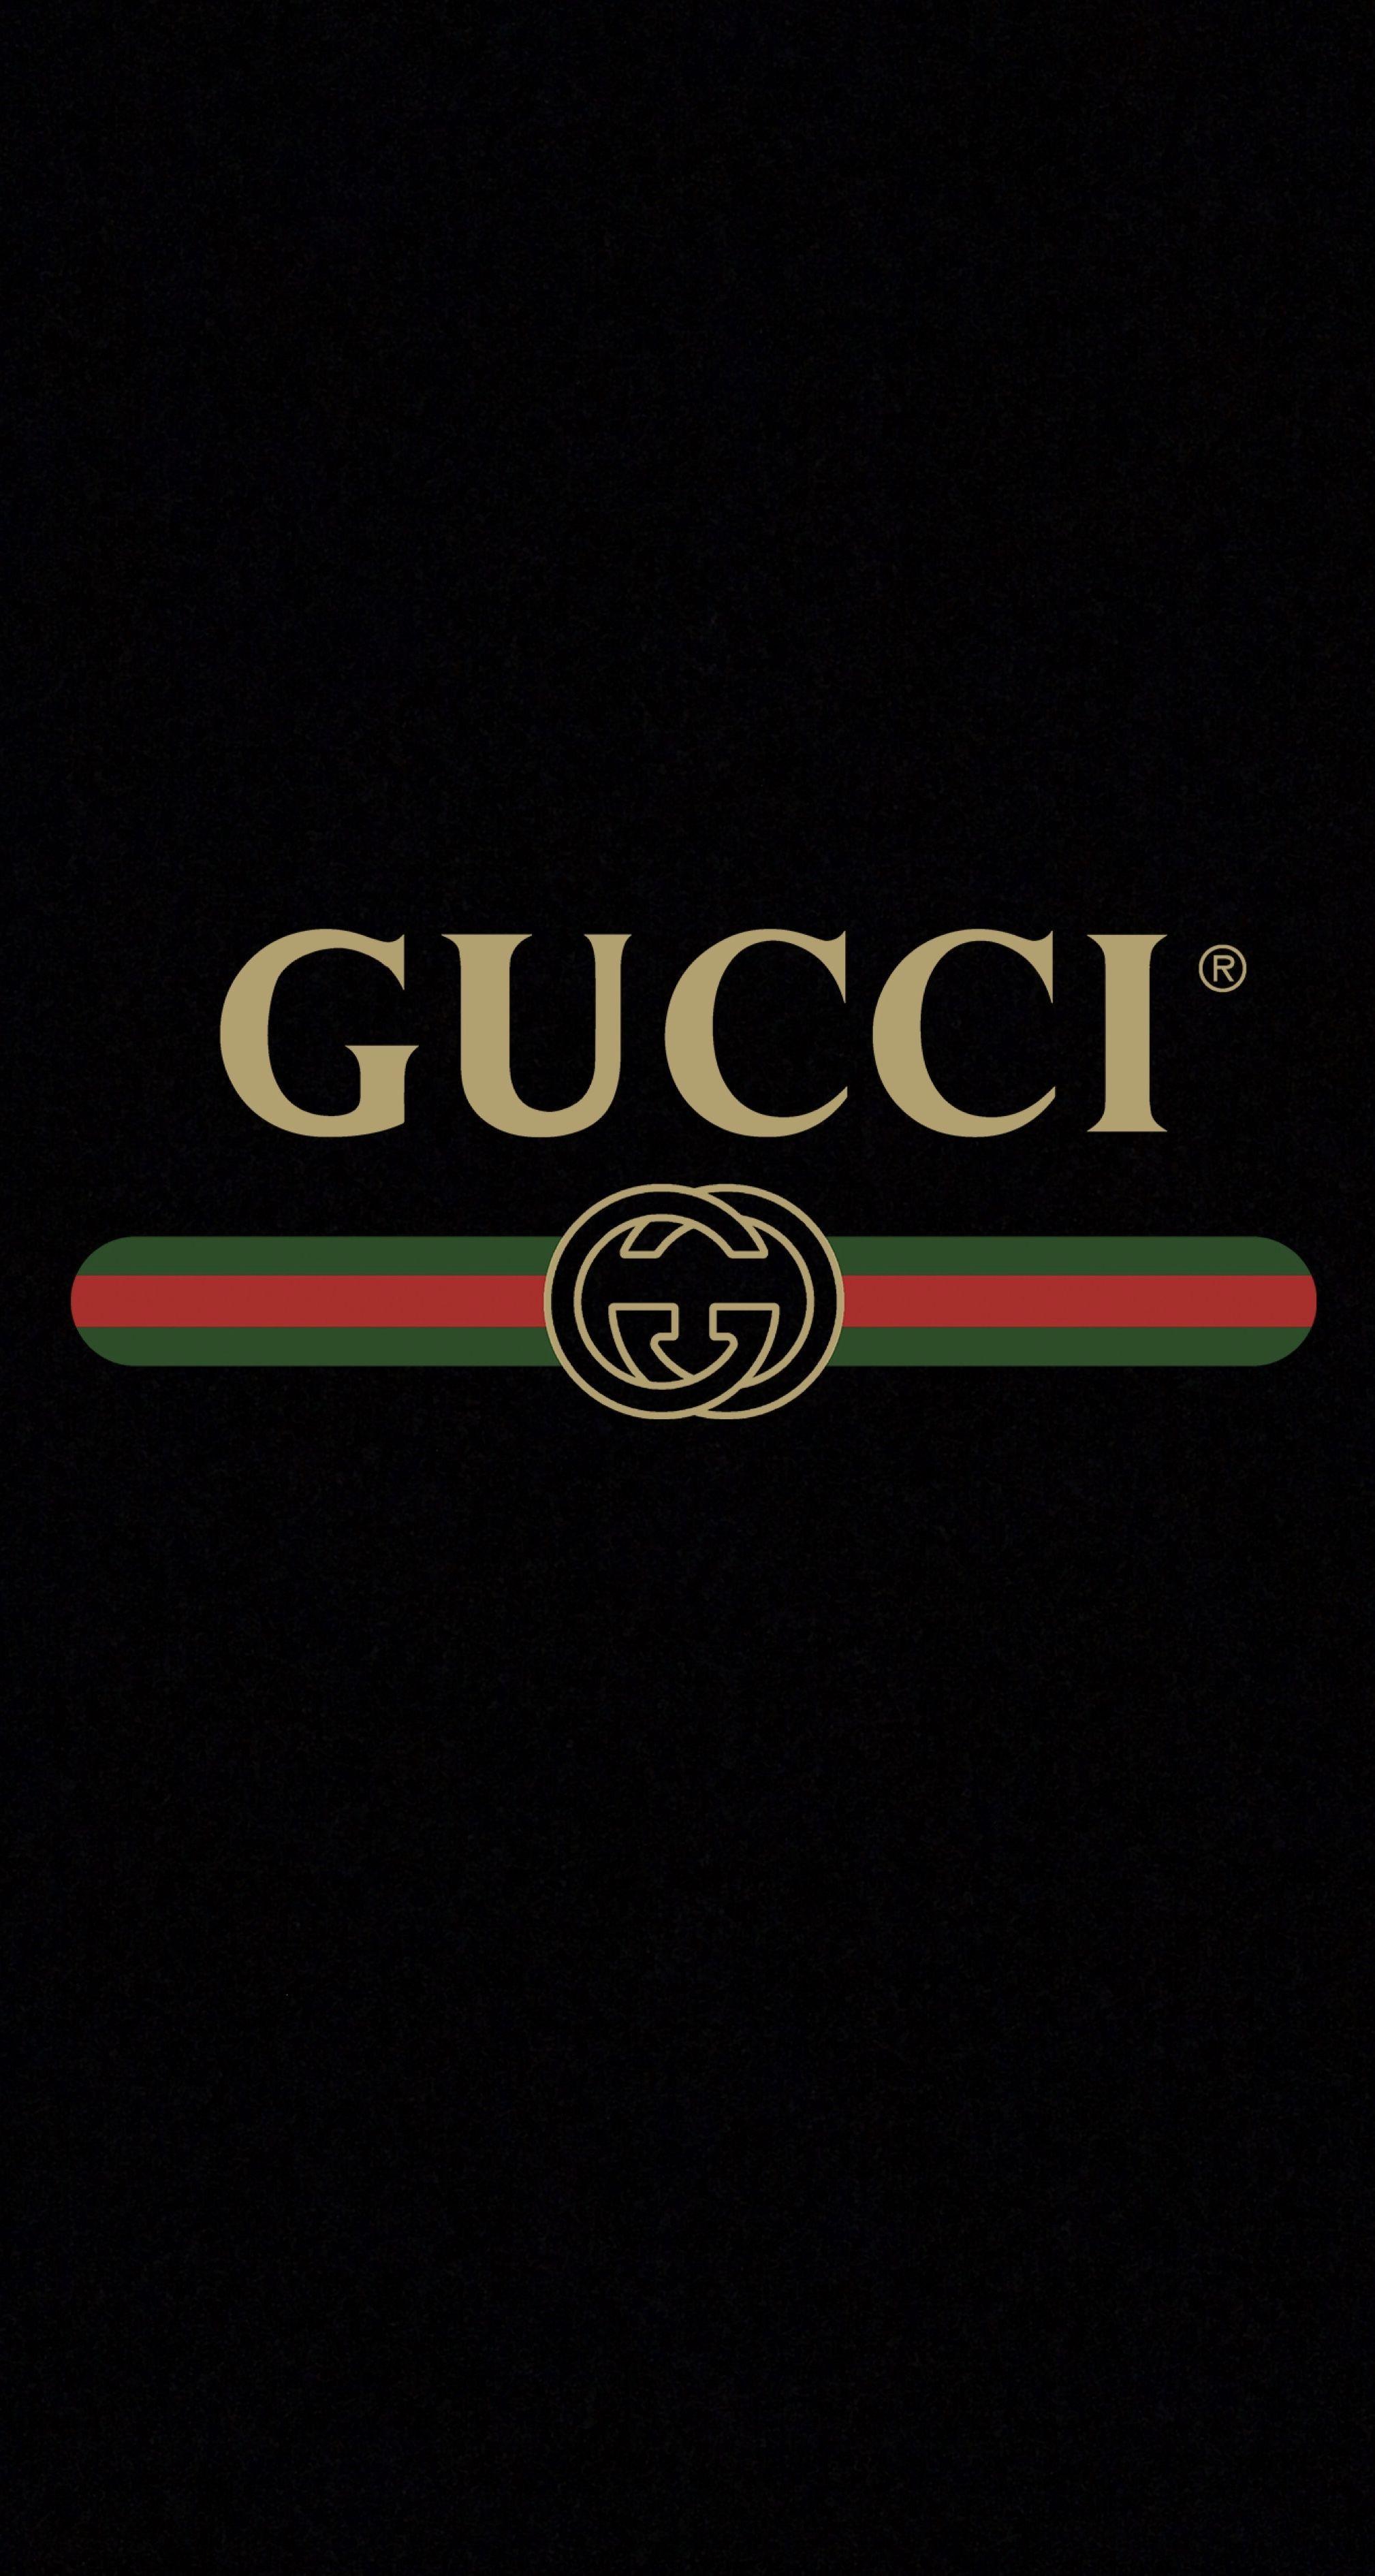 Bạn đang sở hữu chiếc iPhone và muốn tìm một hình nền Gucci độc đáo để trang trí cho thiết bị của mình? Hãy tải ngay bộ sưu tập Gucci Logo iPhone Wallpapers trên trang web của chúng tôi. Đảm bảo sẽ mang đến cho bạn trải nghiệm tuyệt vời!